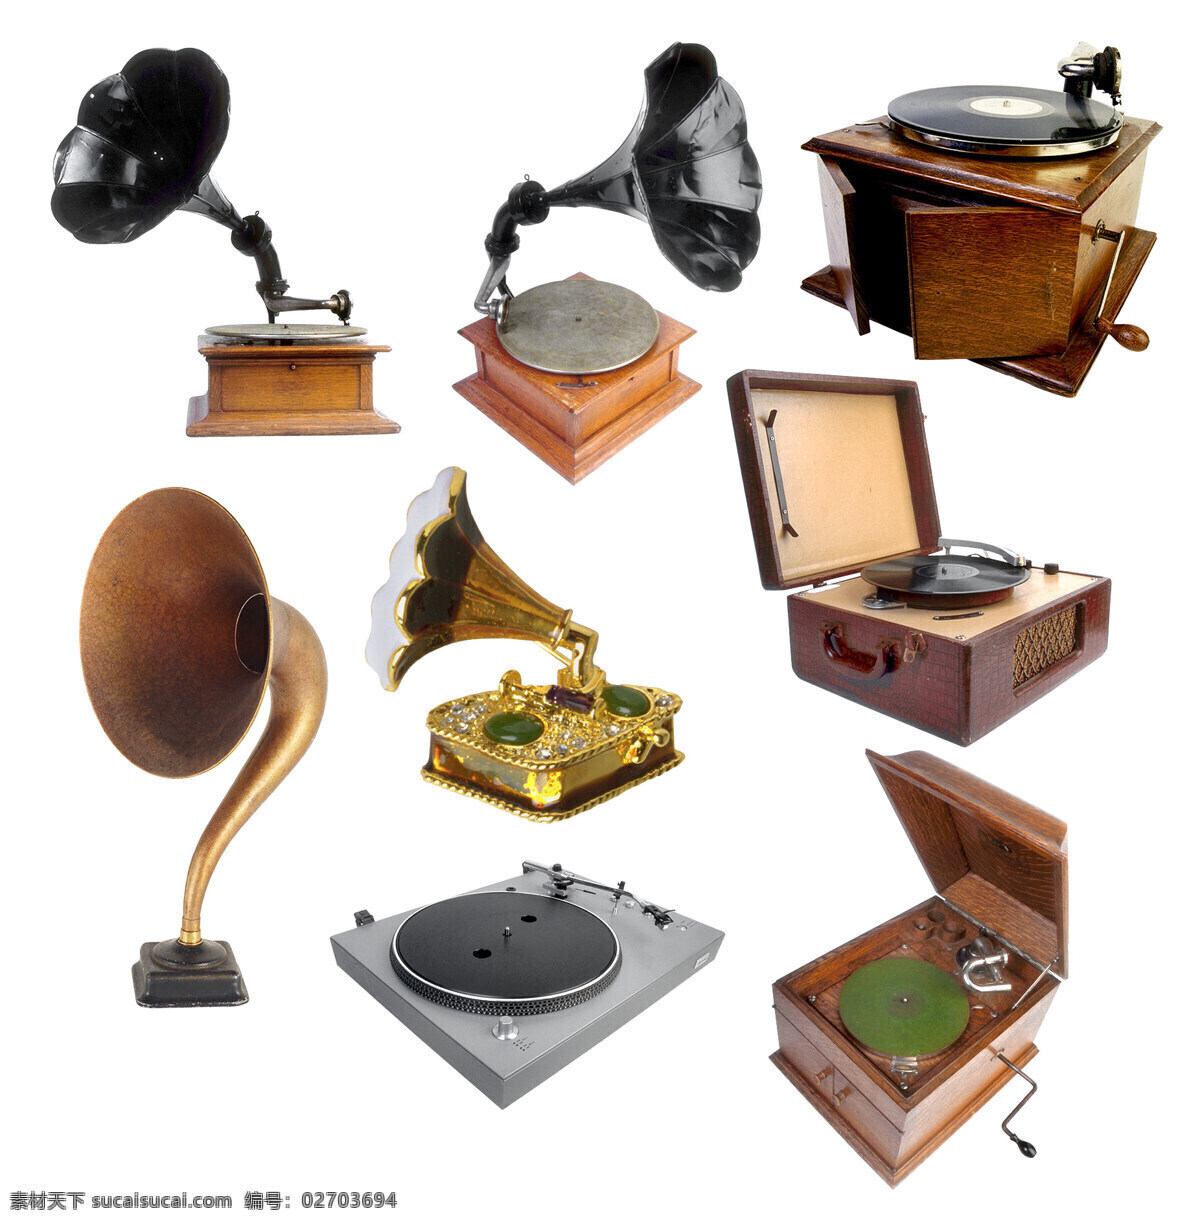 老唱片机 唱片机 点唱机 老上海 地产 喇叭 经典 怀旧 生活百科 生活用品 设计图库